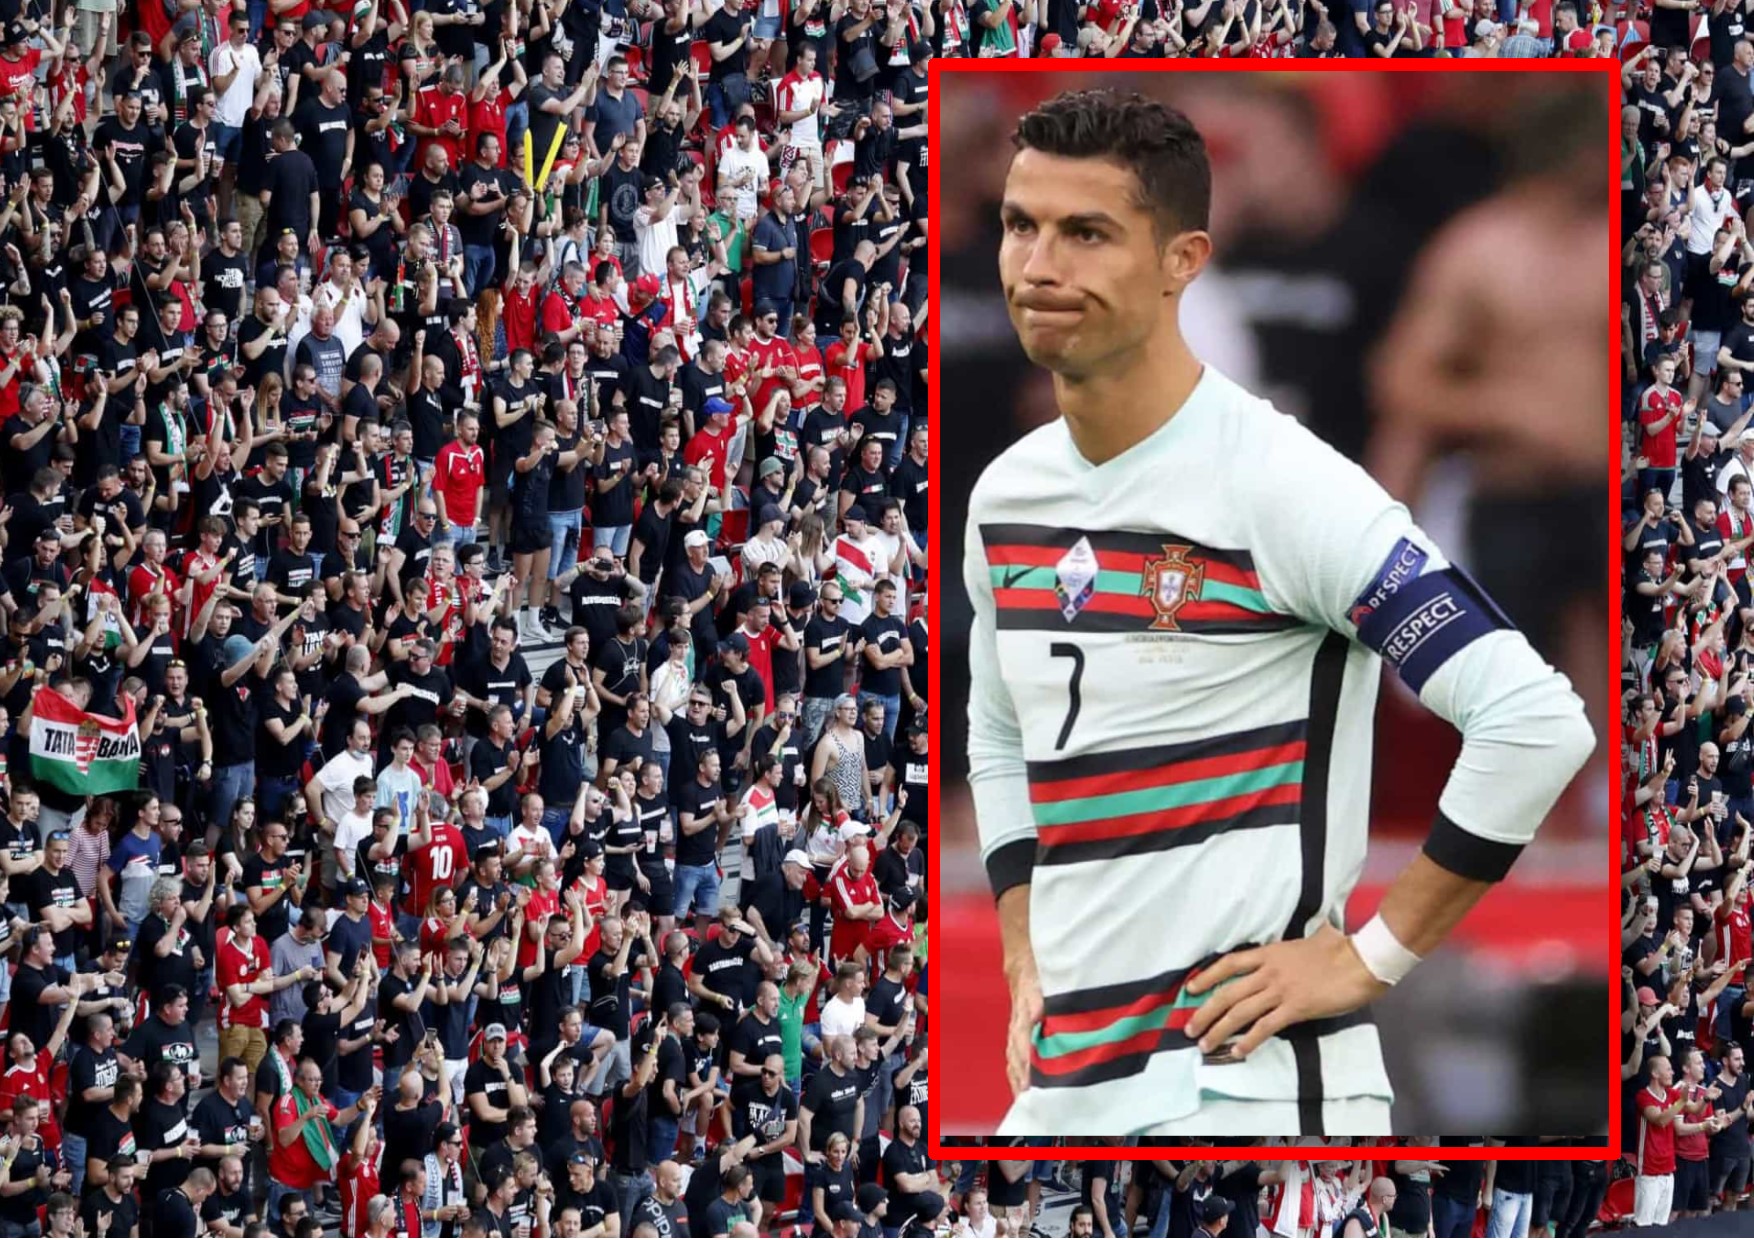 Honteux, Ronaldo visé par des cris homophobes pendant Hongrie-Portugal